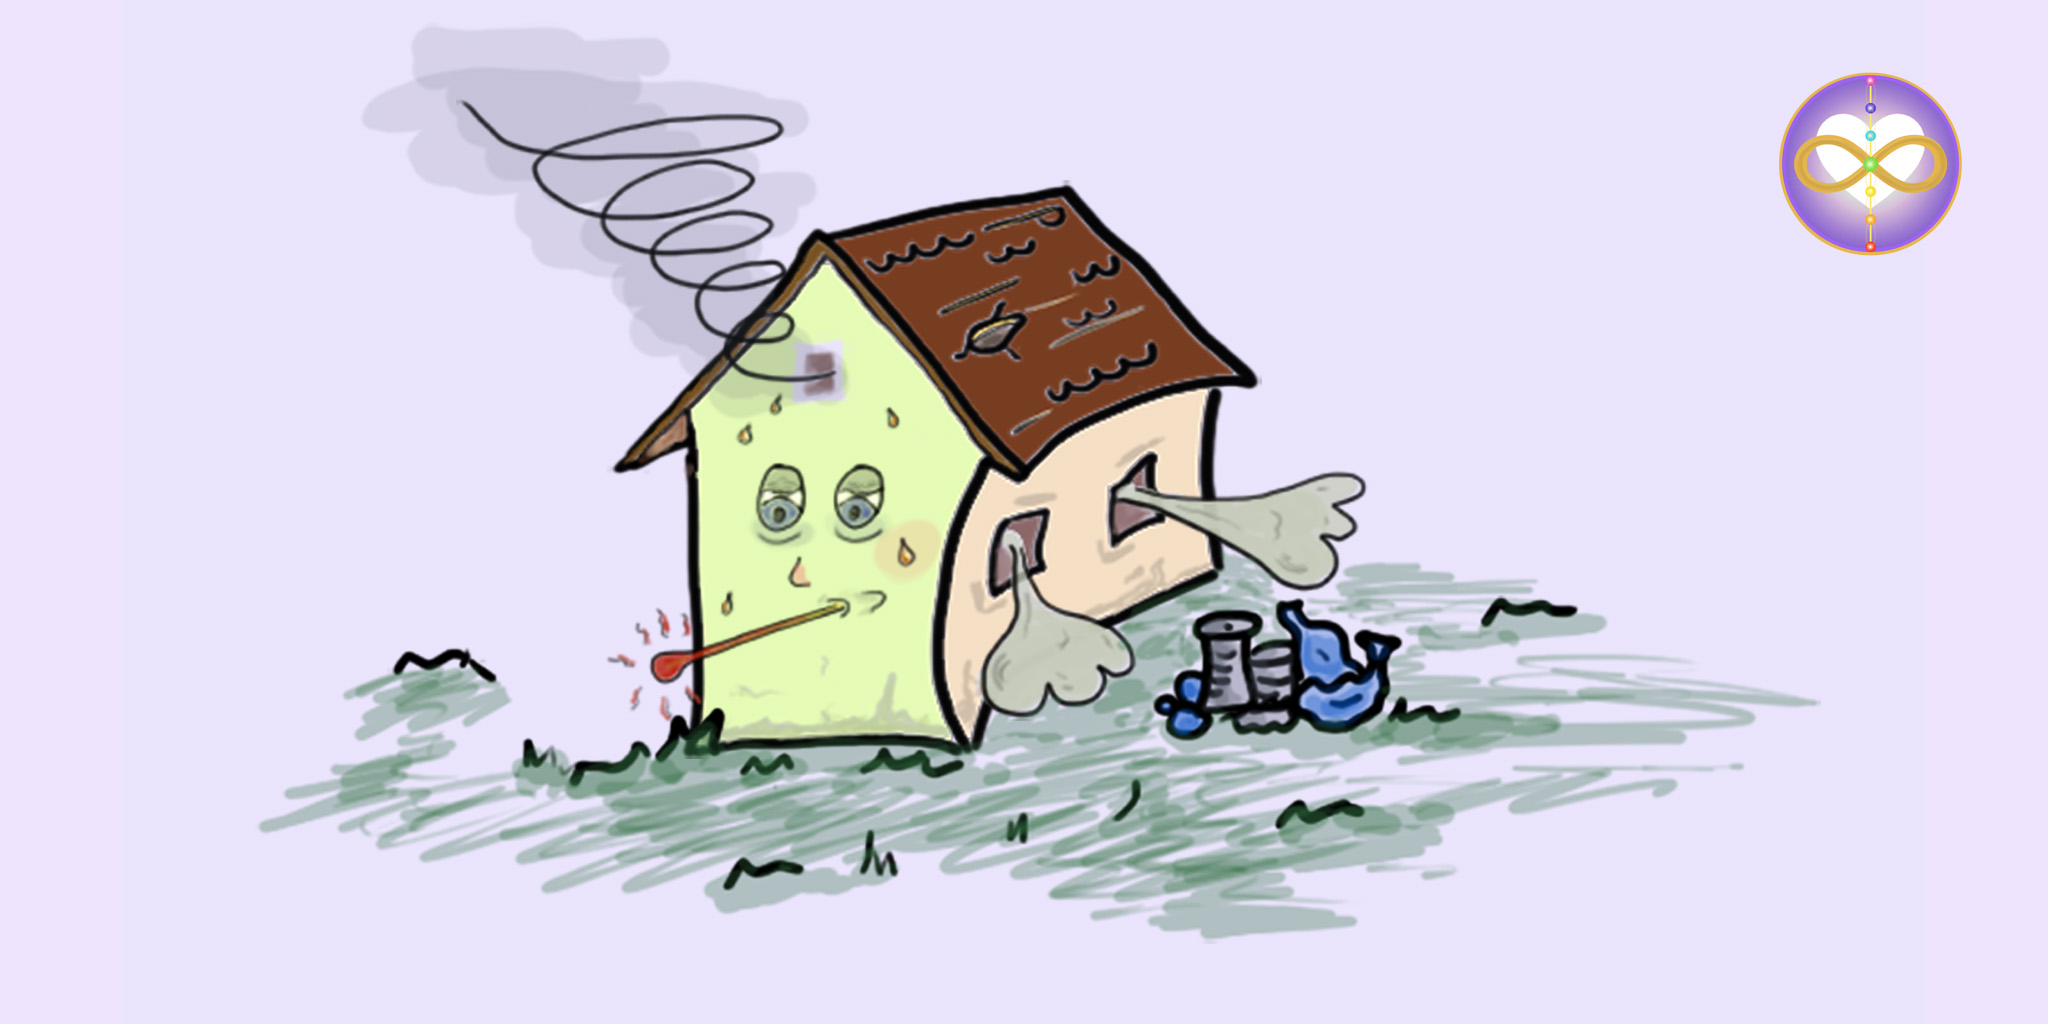 Wohnraum-Reinigung. Befreiung schlechter Energien. Gesundung des Hauses, energetische Grundstücks-Hausreinigung und Wohnung. Clearing.